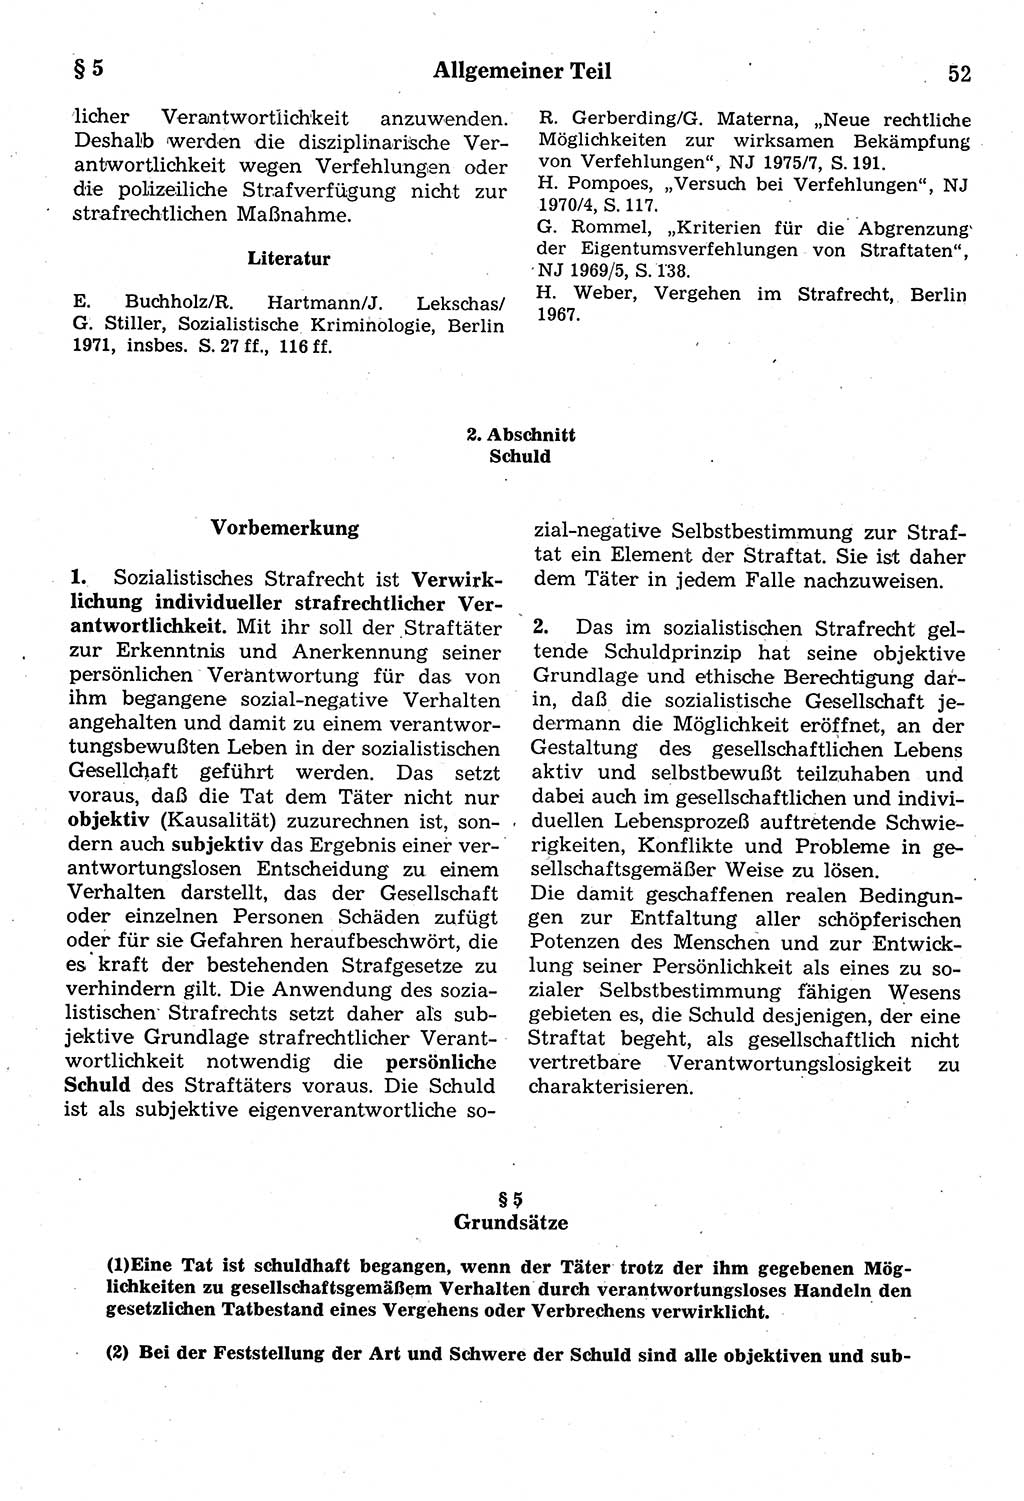 Strafrecht der Deutschen Demokratischen Republik (DDR), Kommentar zum Strafgesetzbuch (StGB) 1987, Seite 52 (Strafr. DDR Komm. StGB 1987, S. 52)